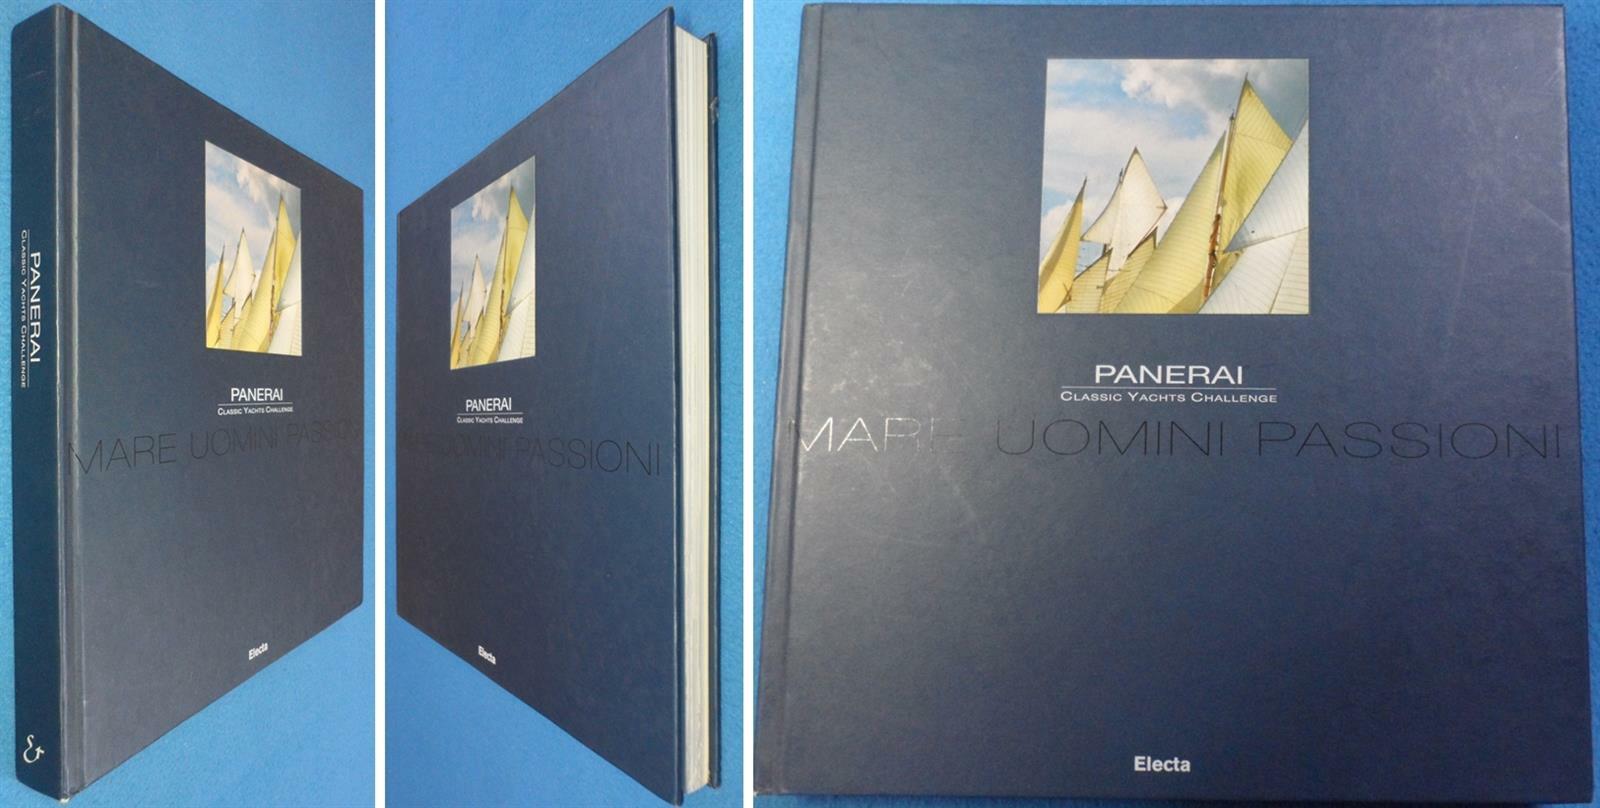 [중고] Panerai: Classic Yachts Challenge/Mare Uomini Passioni   ISBN 8837047444 ☞ 상현서림 ☜/ 사진의 제품 / 